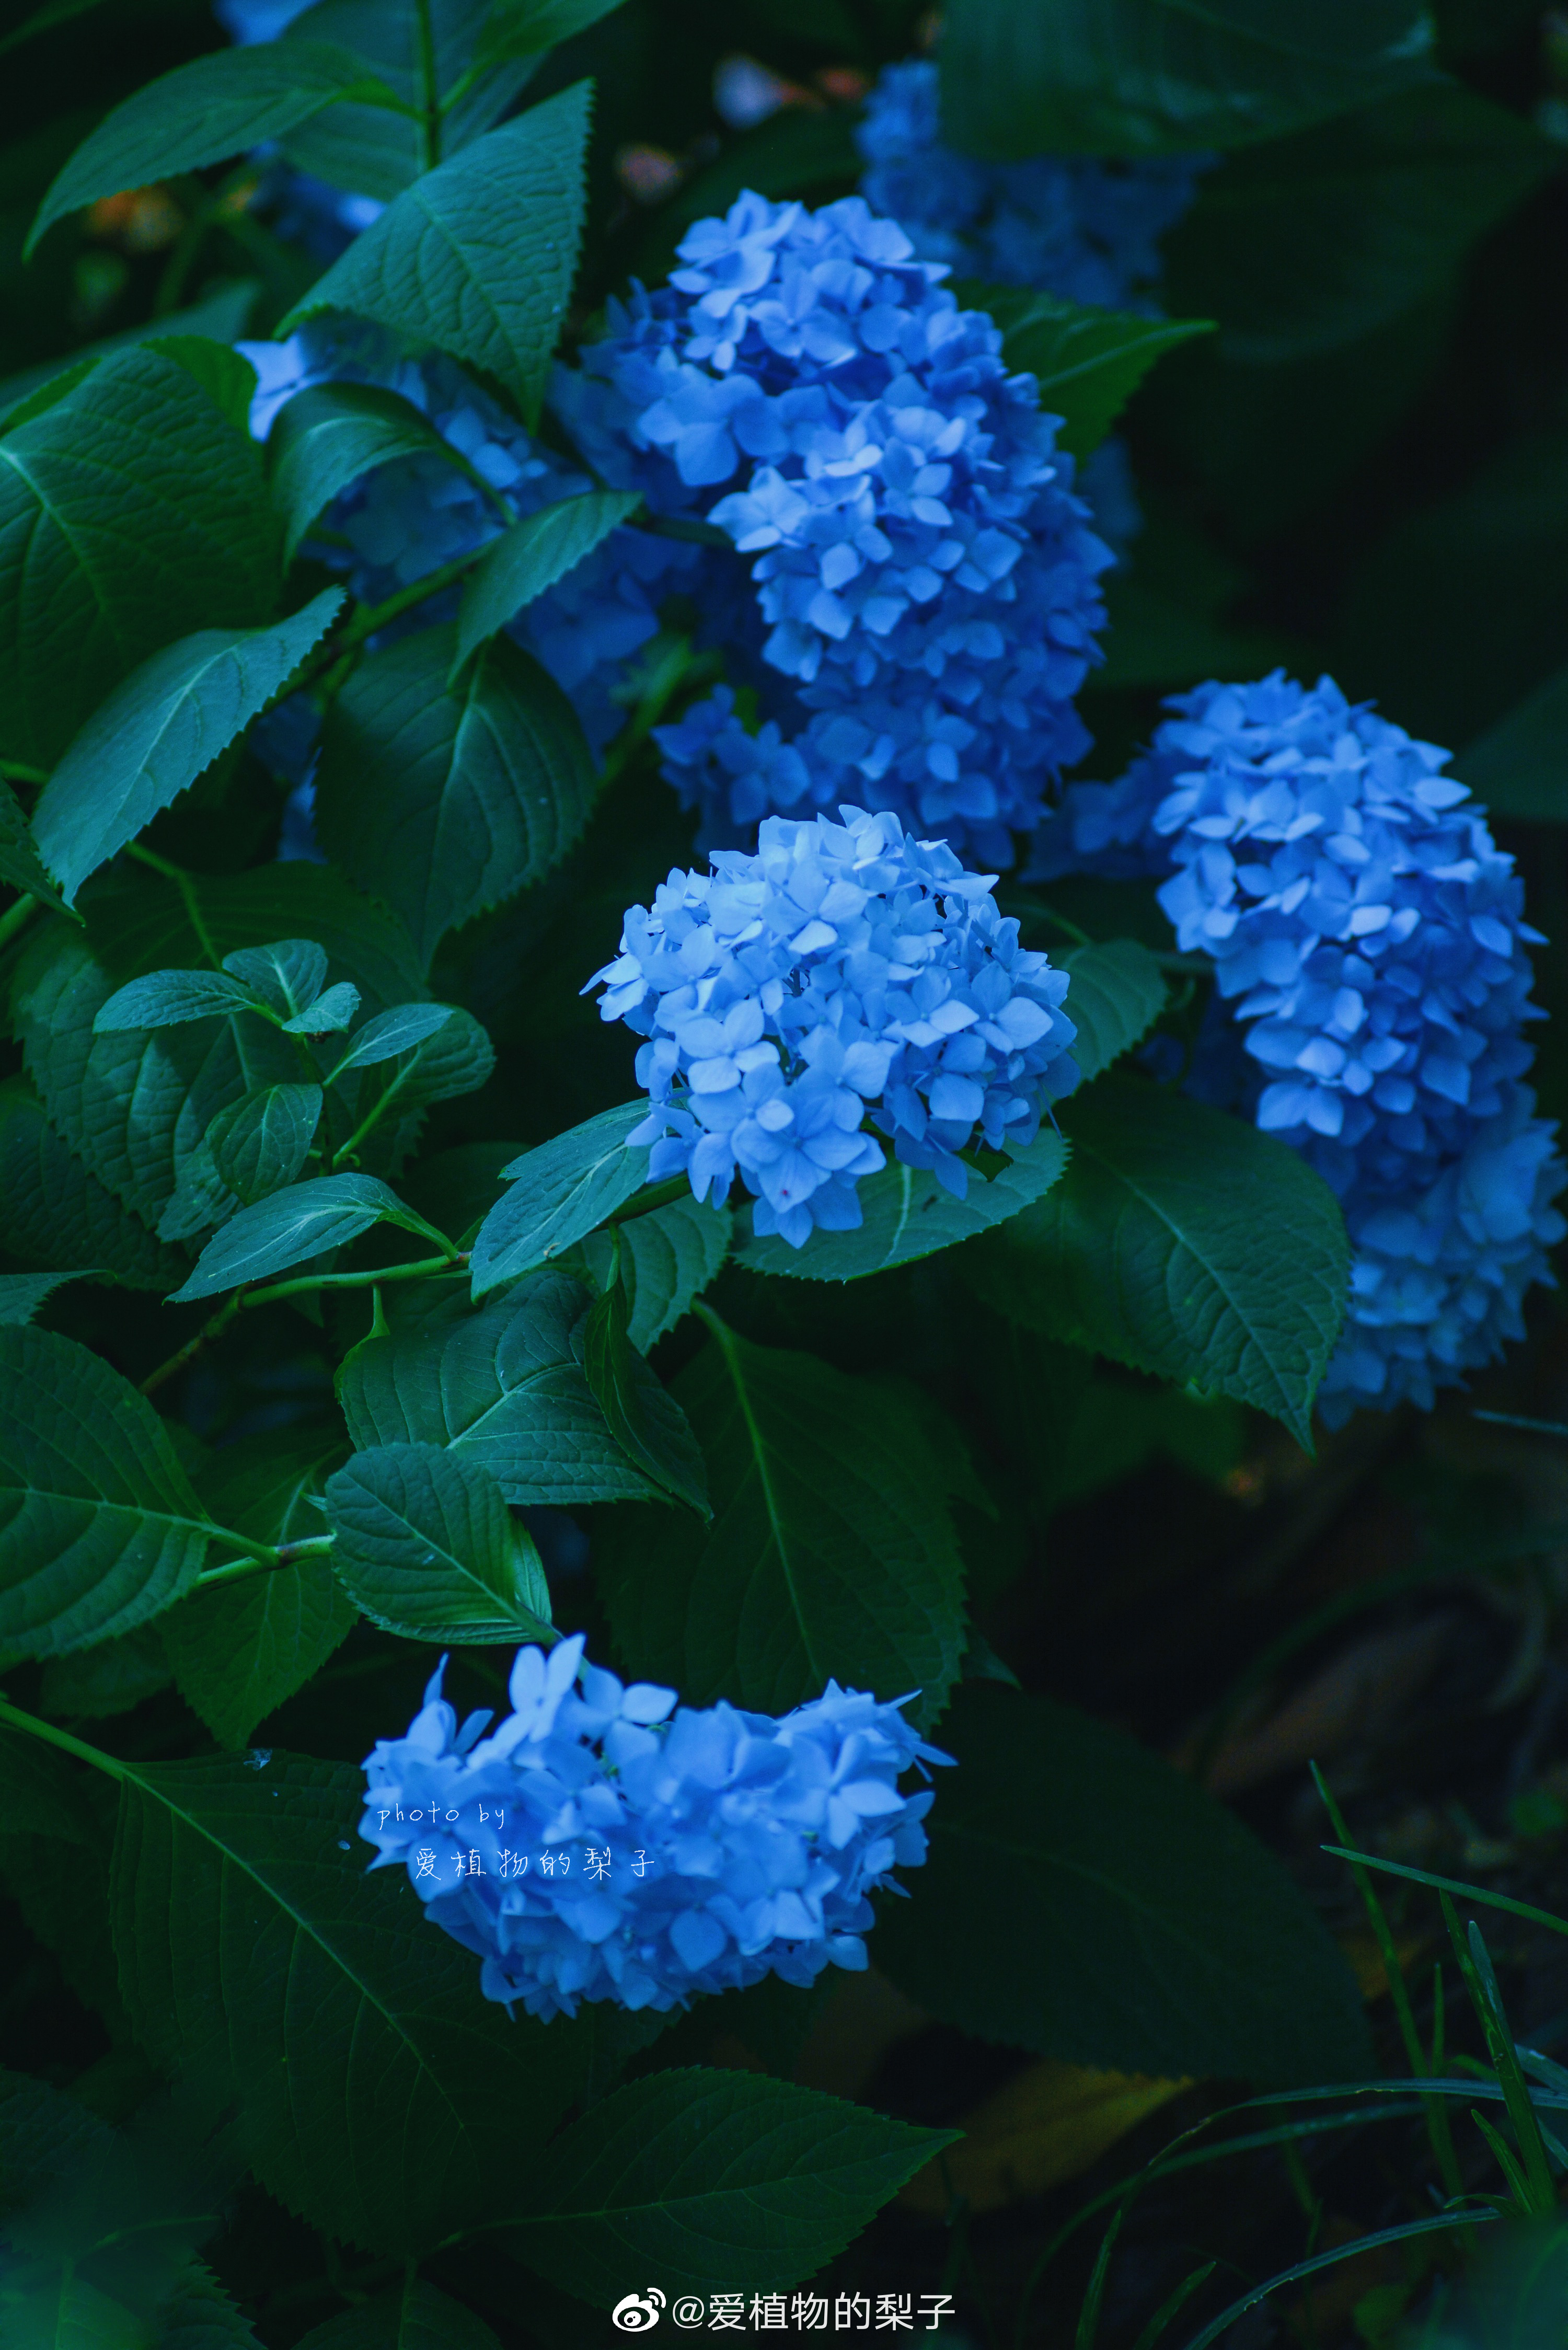 爱植物的梨子 中山植物园的蓝色绣球 幽蓝调